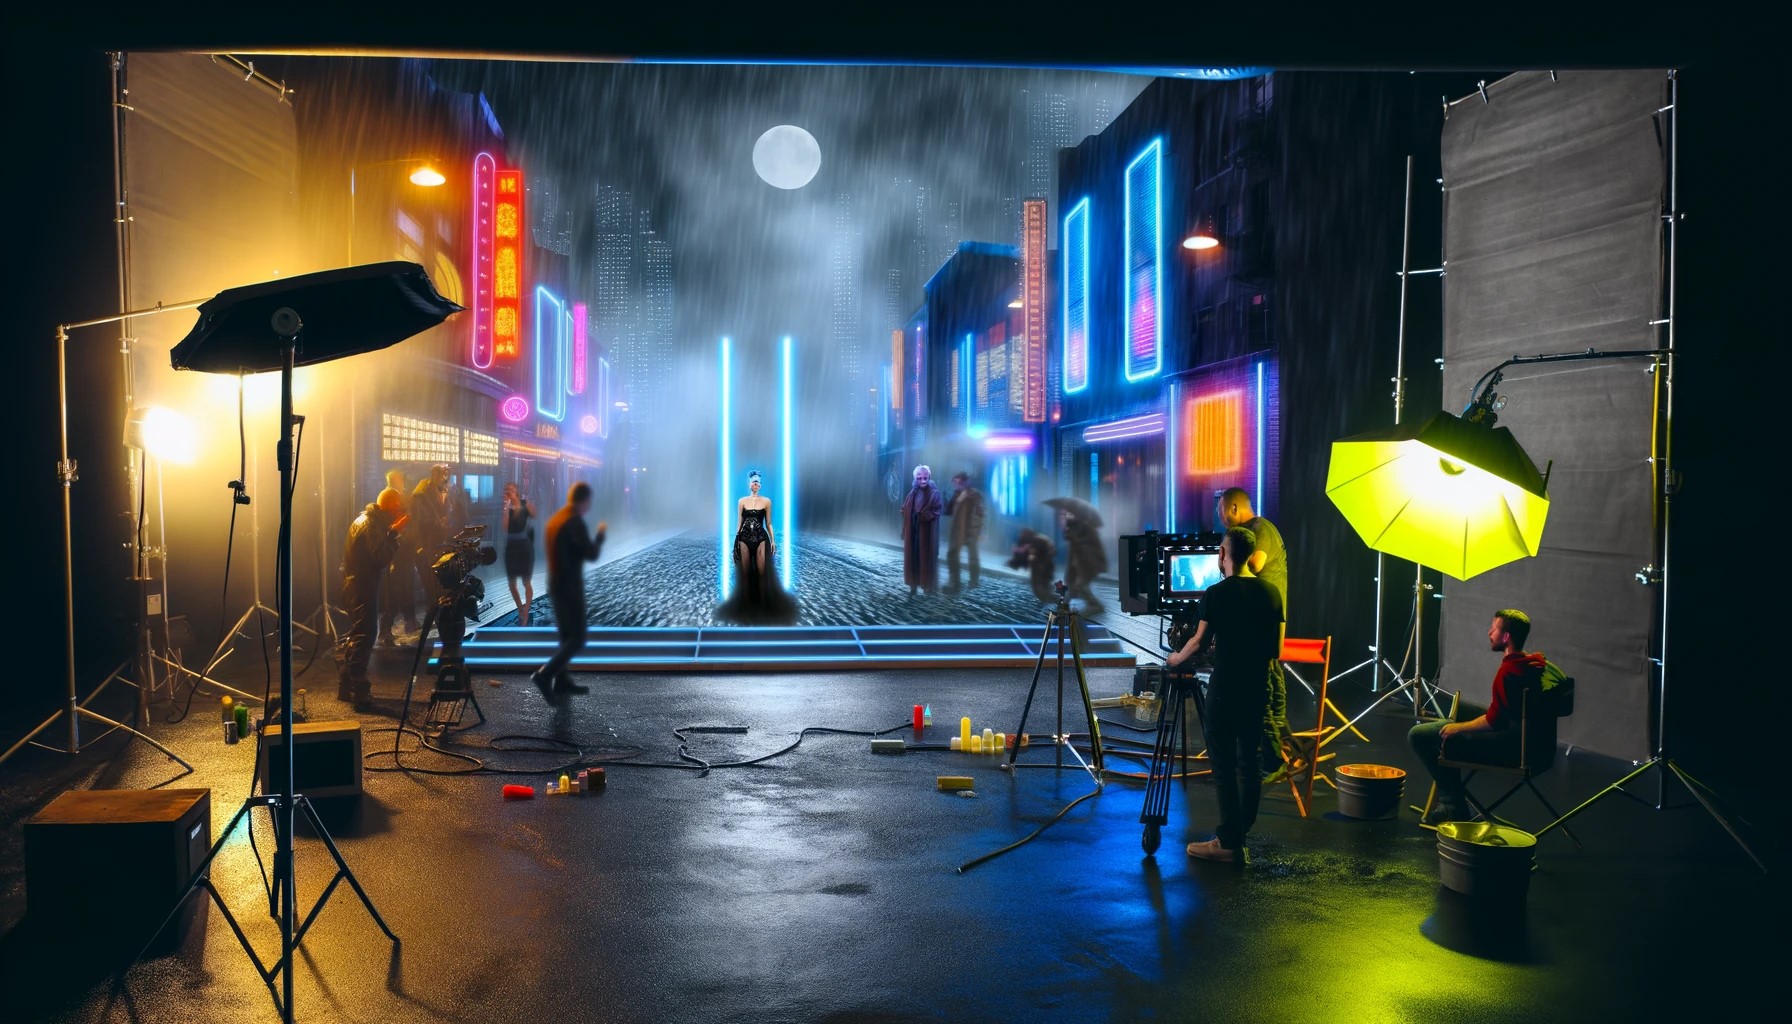 Auf dem Bild ist eine nachgestellte Szene aus dem Film Blade Runner zu sehen, um die Lichtstimmung darzustellen. Es regnet und der Mond ist sichtbar.